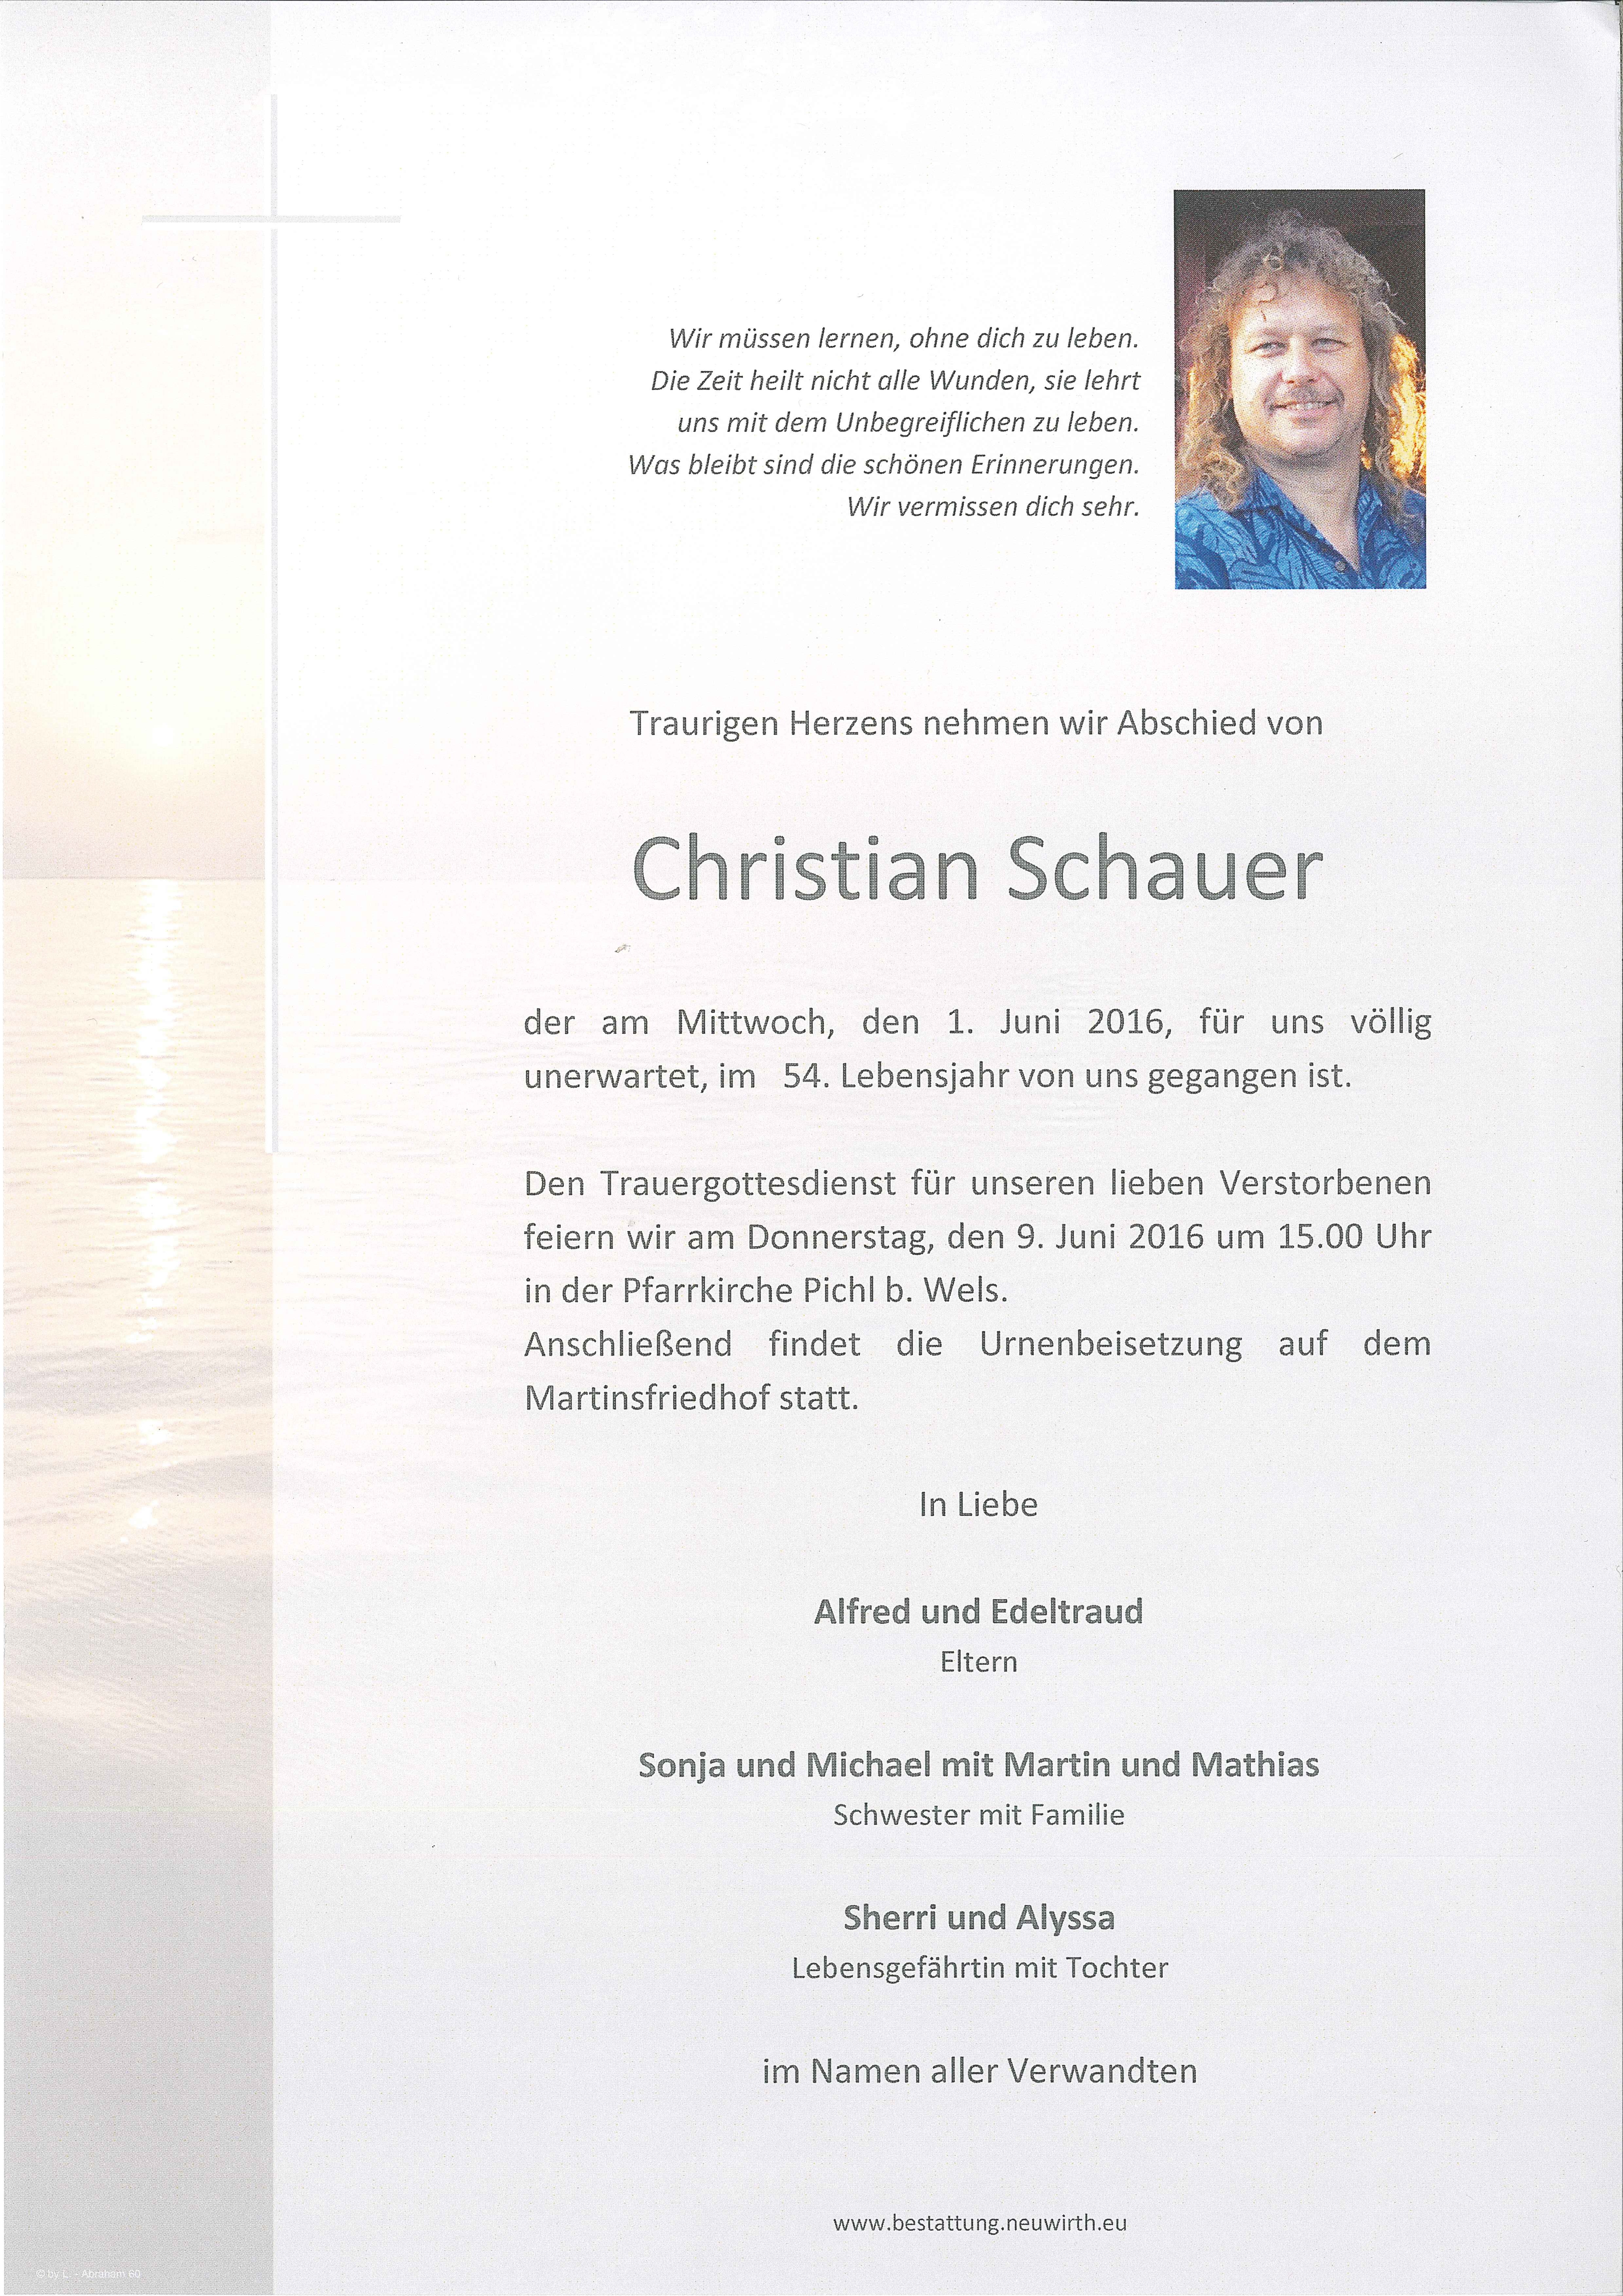 Christian Schauer (deutsch)